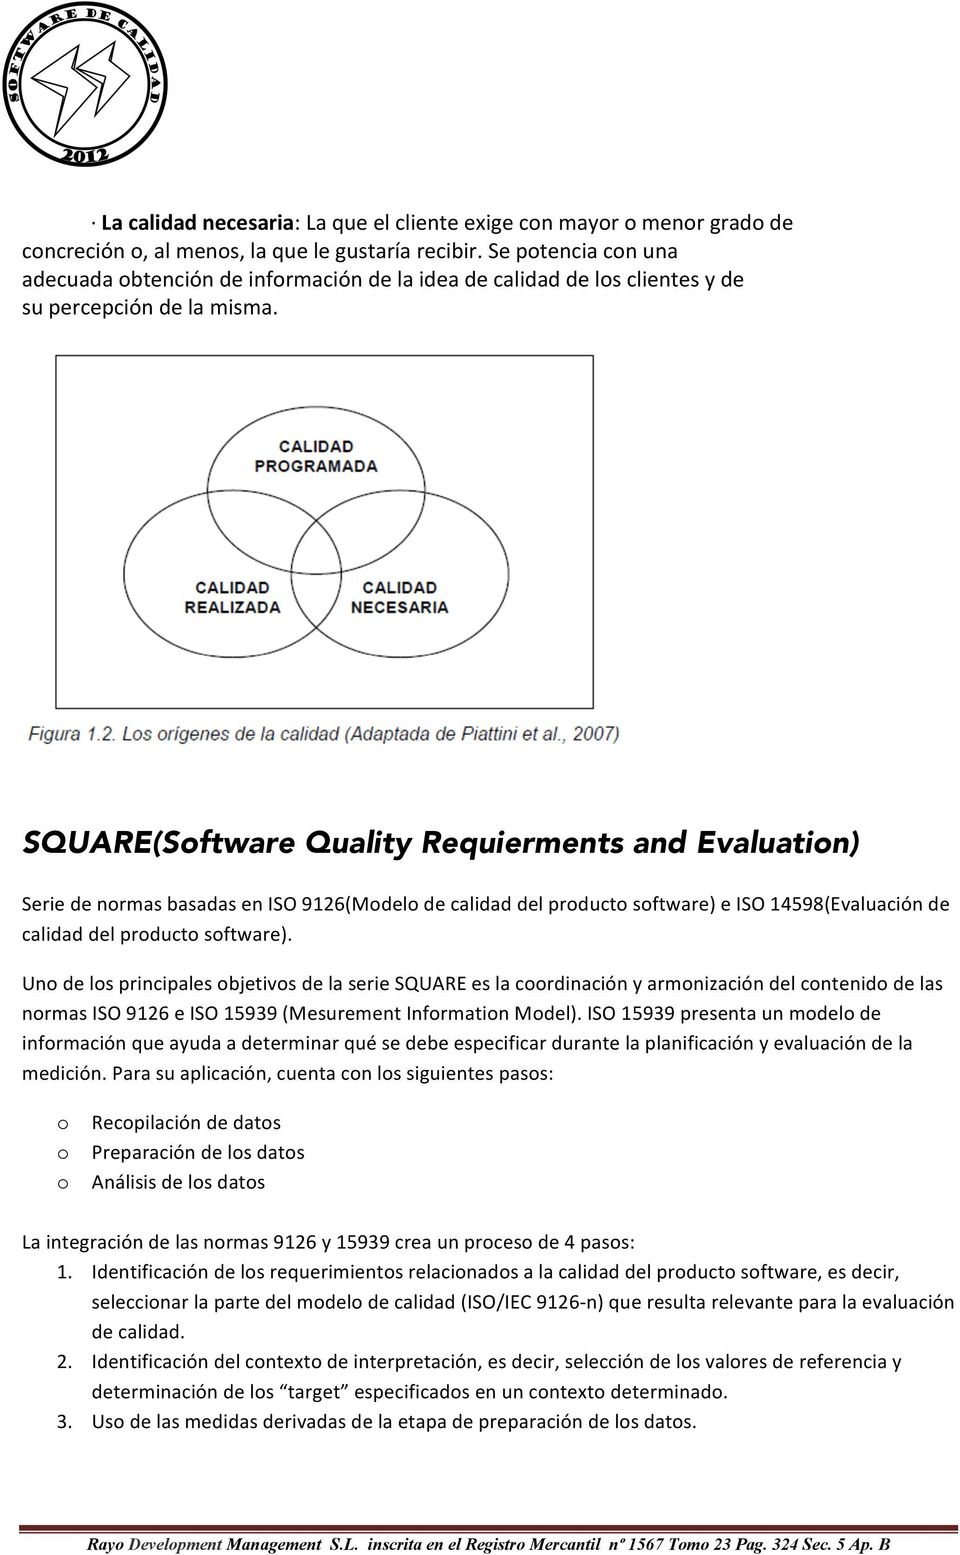 SQUARE(Software Quality Requierments and Evaluation) Serie de normas basadas en ISO 9126(Modelo de calidad del producto software) e ISO 14598(Evaluación de calidad del producto software).